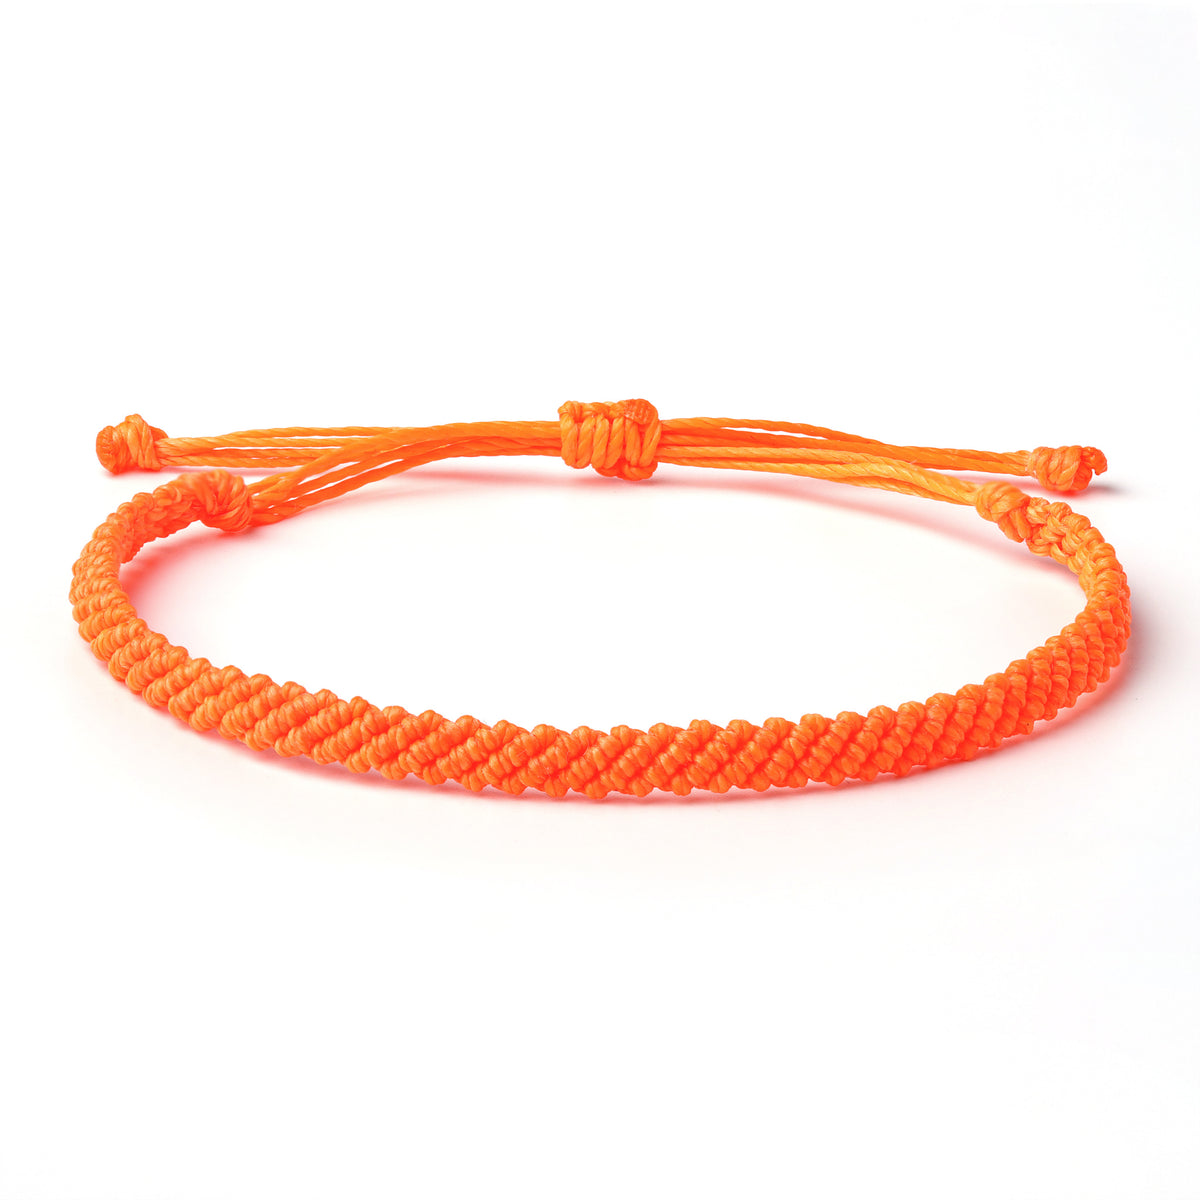 Braided Wax Coated Waterproof Adjustable Bracelet, Neon Orange